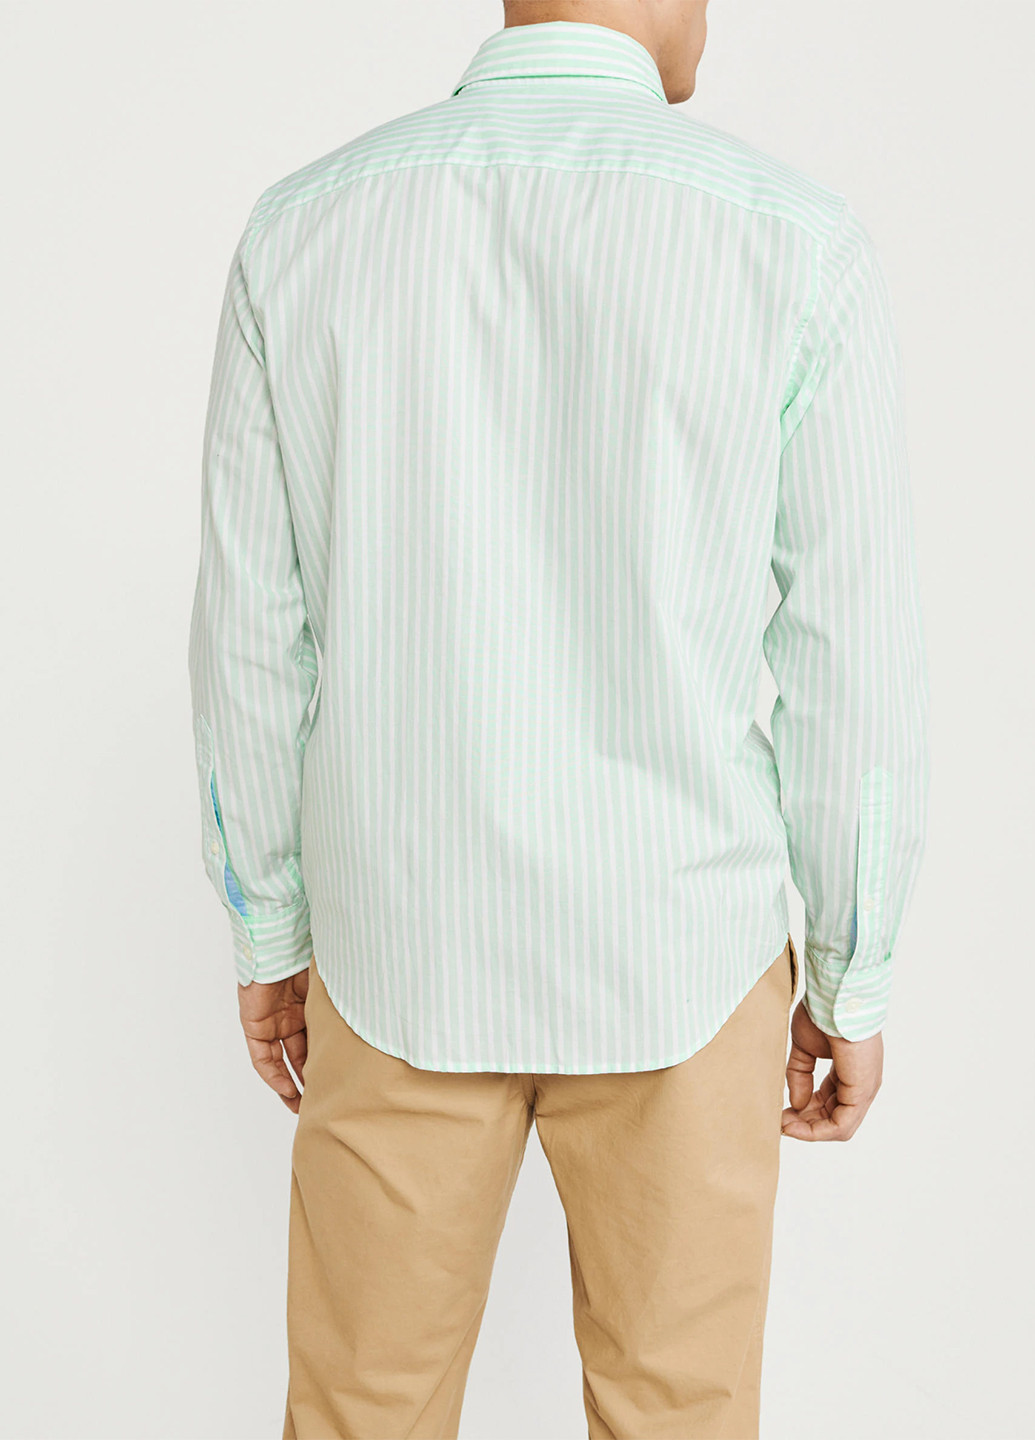 Цветная кэжуал рубашка в полоску Abercrombie & Fitch с длинным рукавом